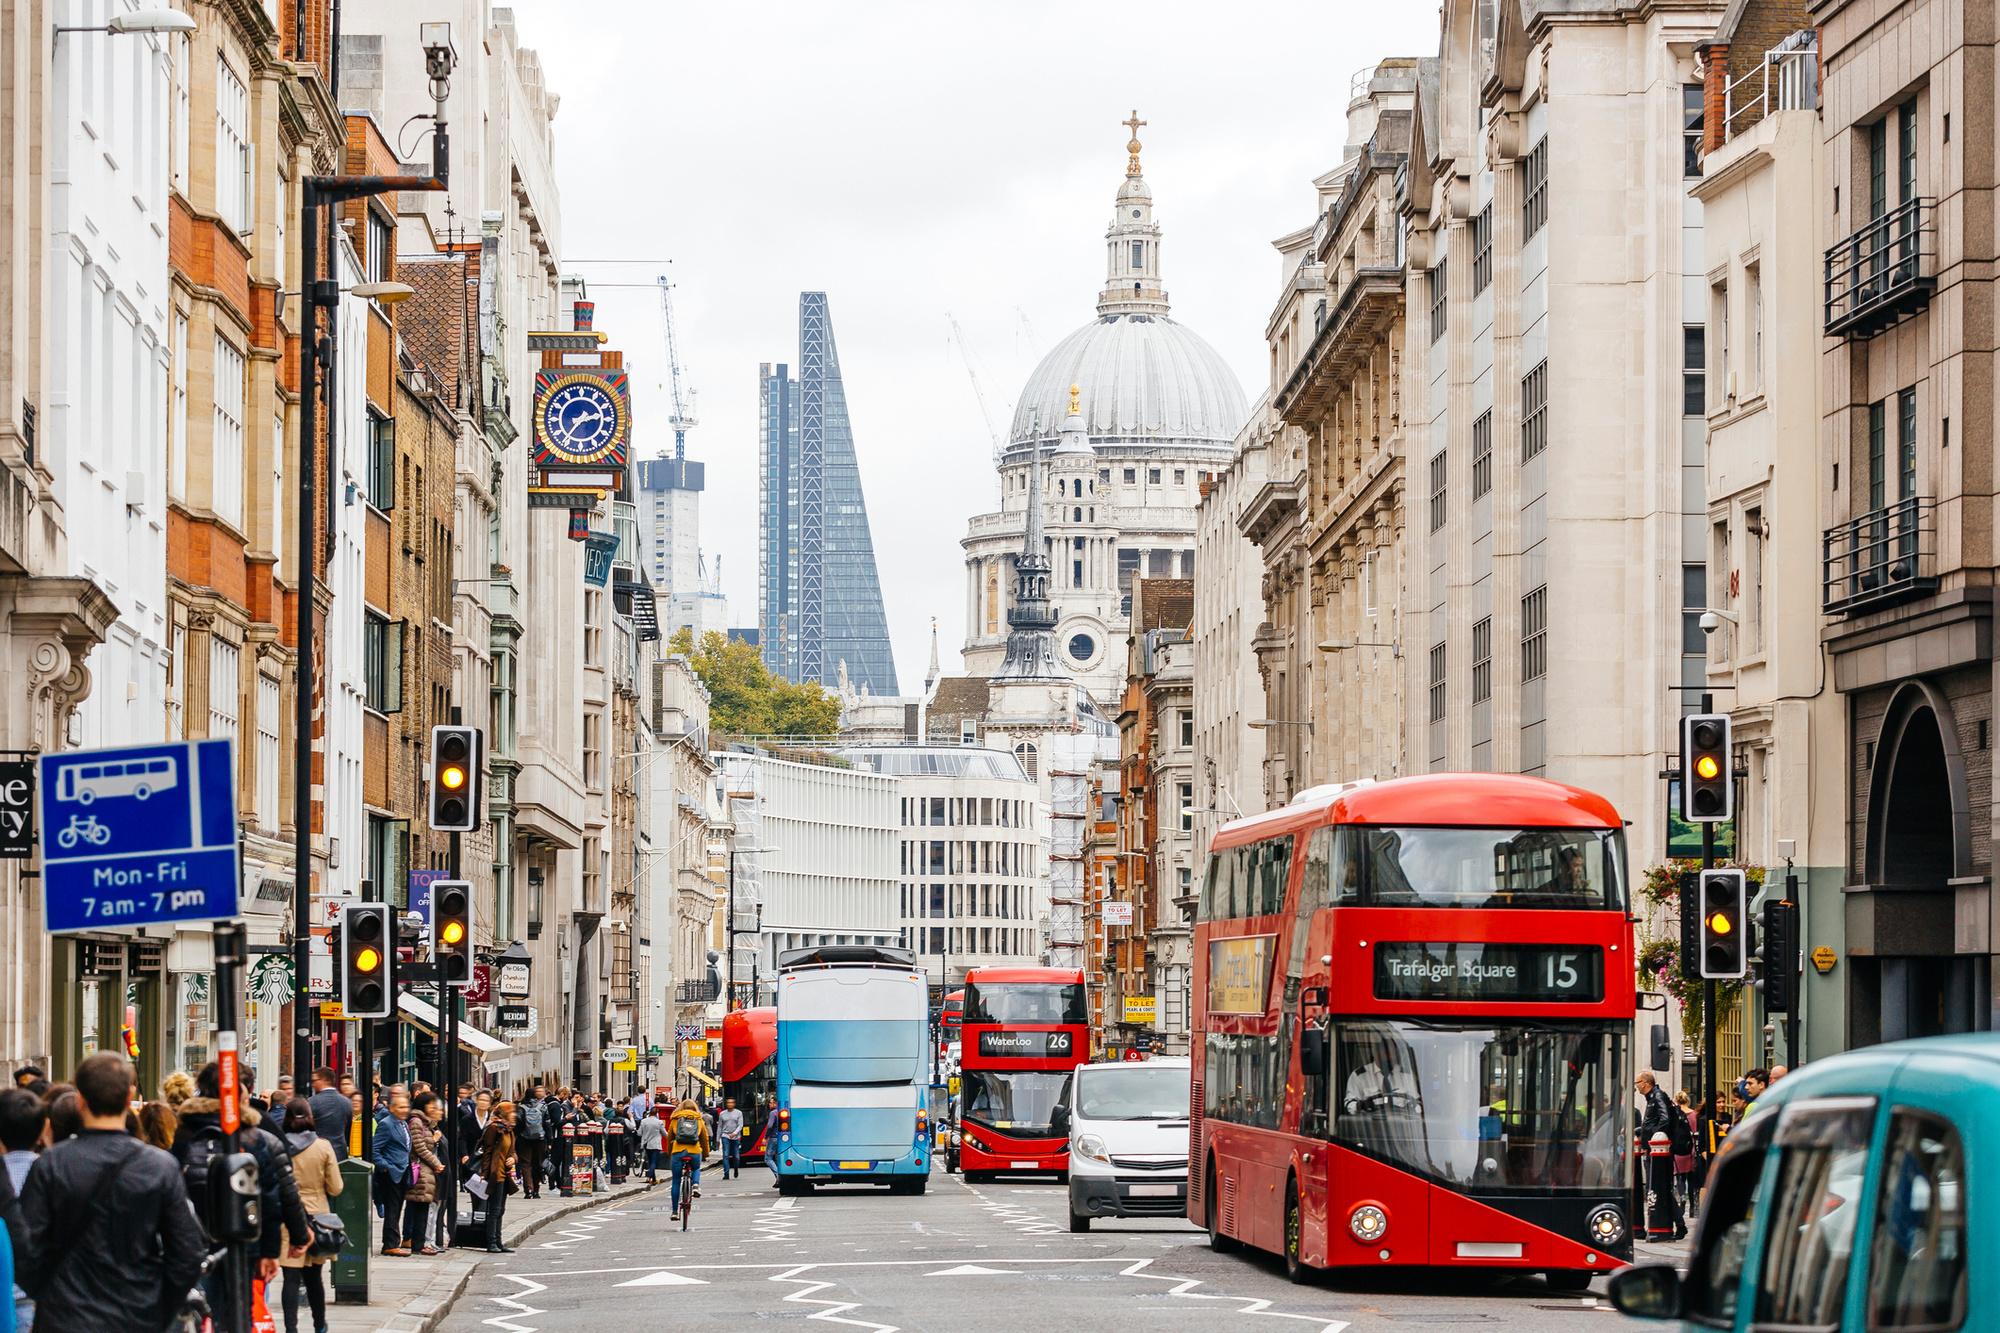 Londen, een populaire bestemming voor een citytrip vanuit Europa.